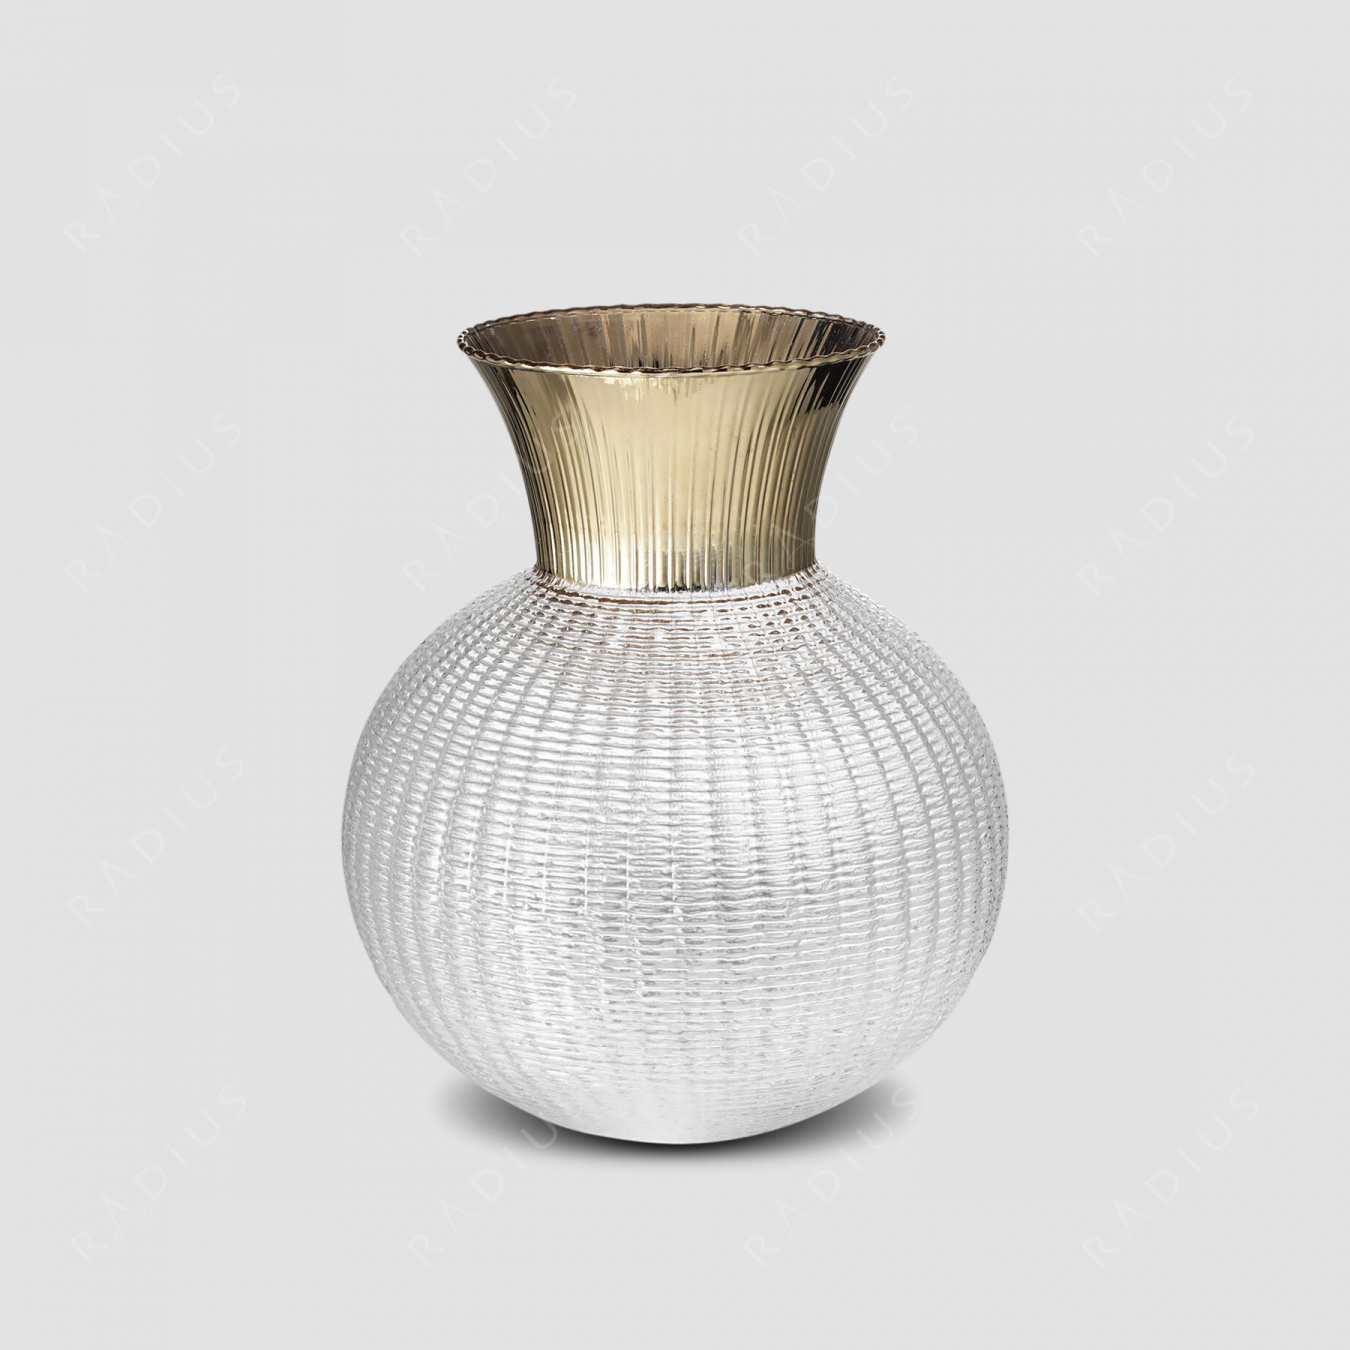 Стеклянная ваза для цветов, диаметр: 20,5 см, высота: 25 см, материал: стекло, цвет прозрачный/шампань, серия Ophelia, IVV (Italy), Италия